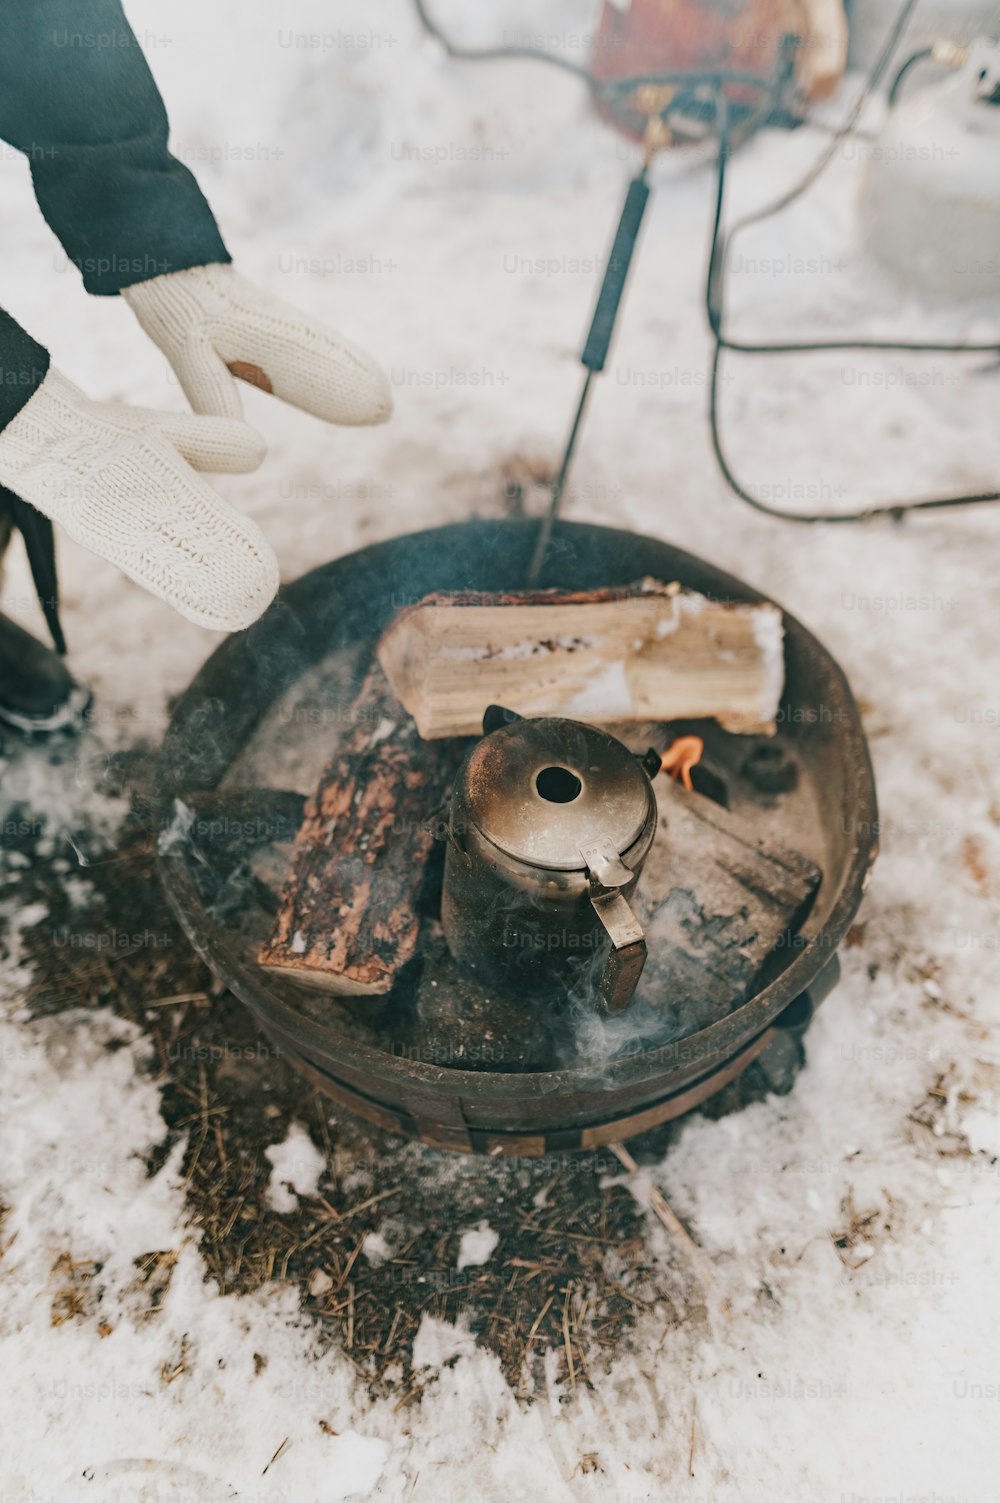 una persona sta cucinando cibo su una stufa nella neve